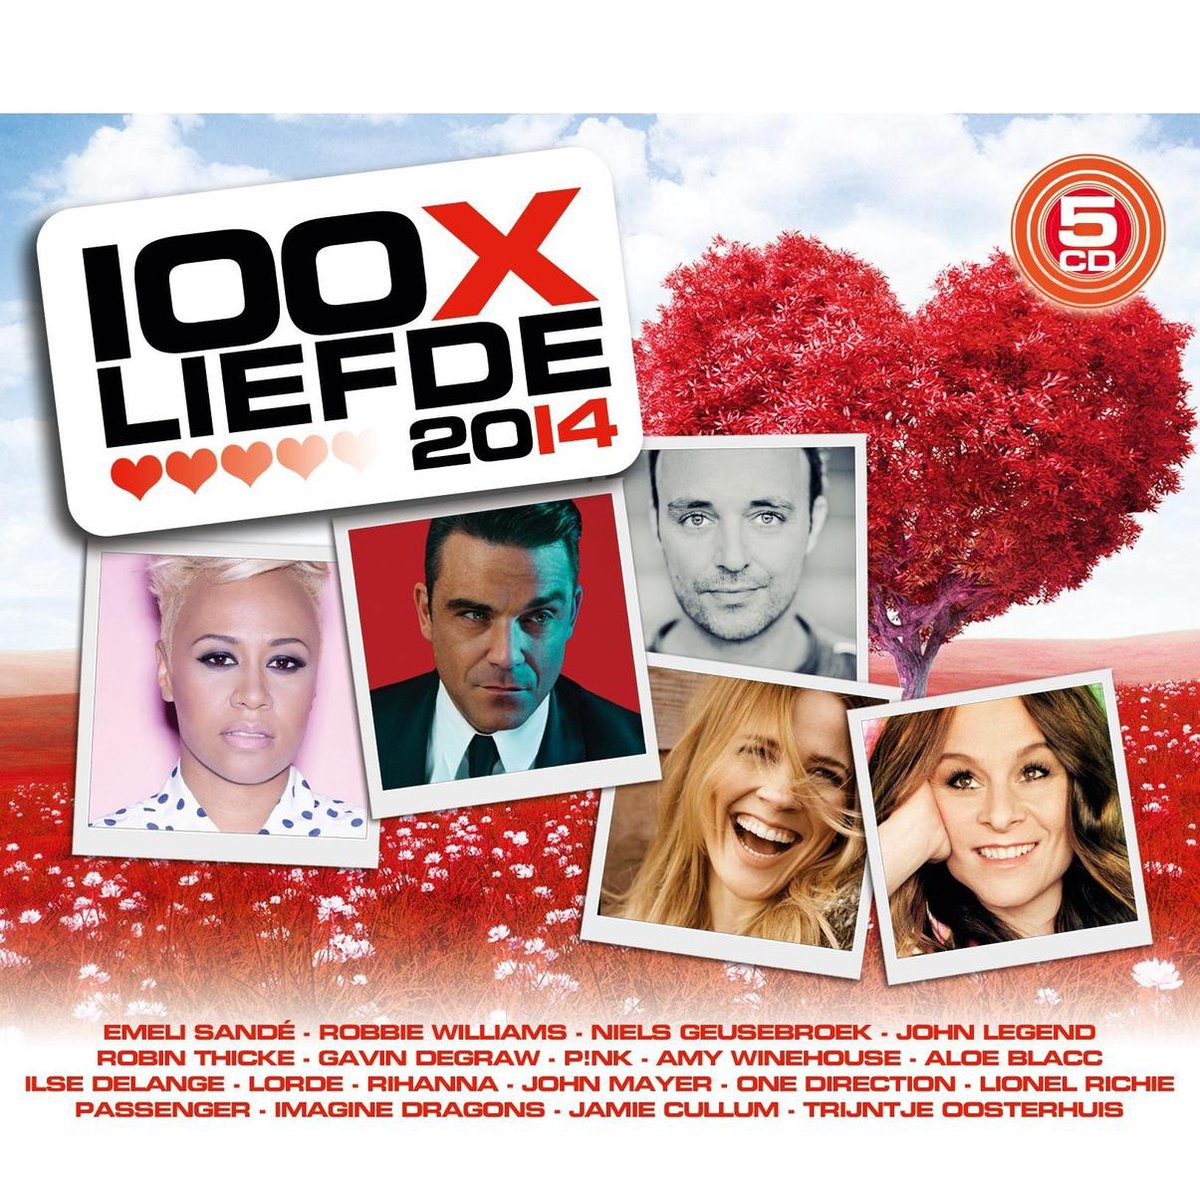 100X Liefde 2014 - various artists